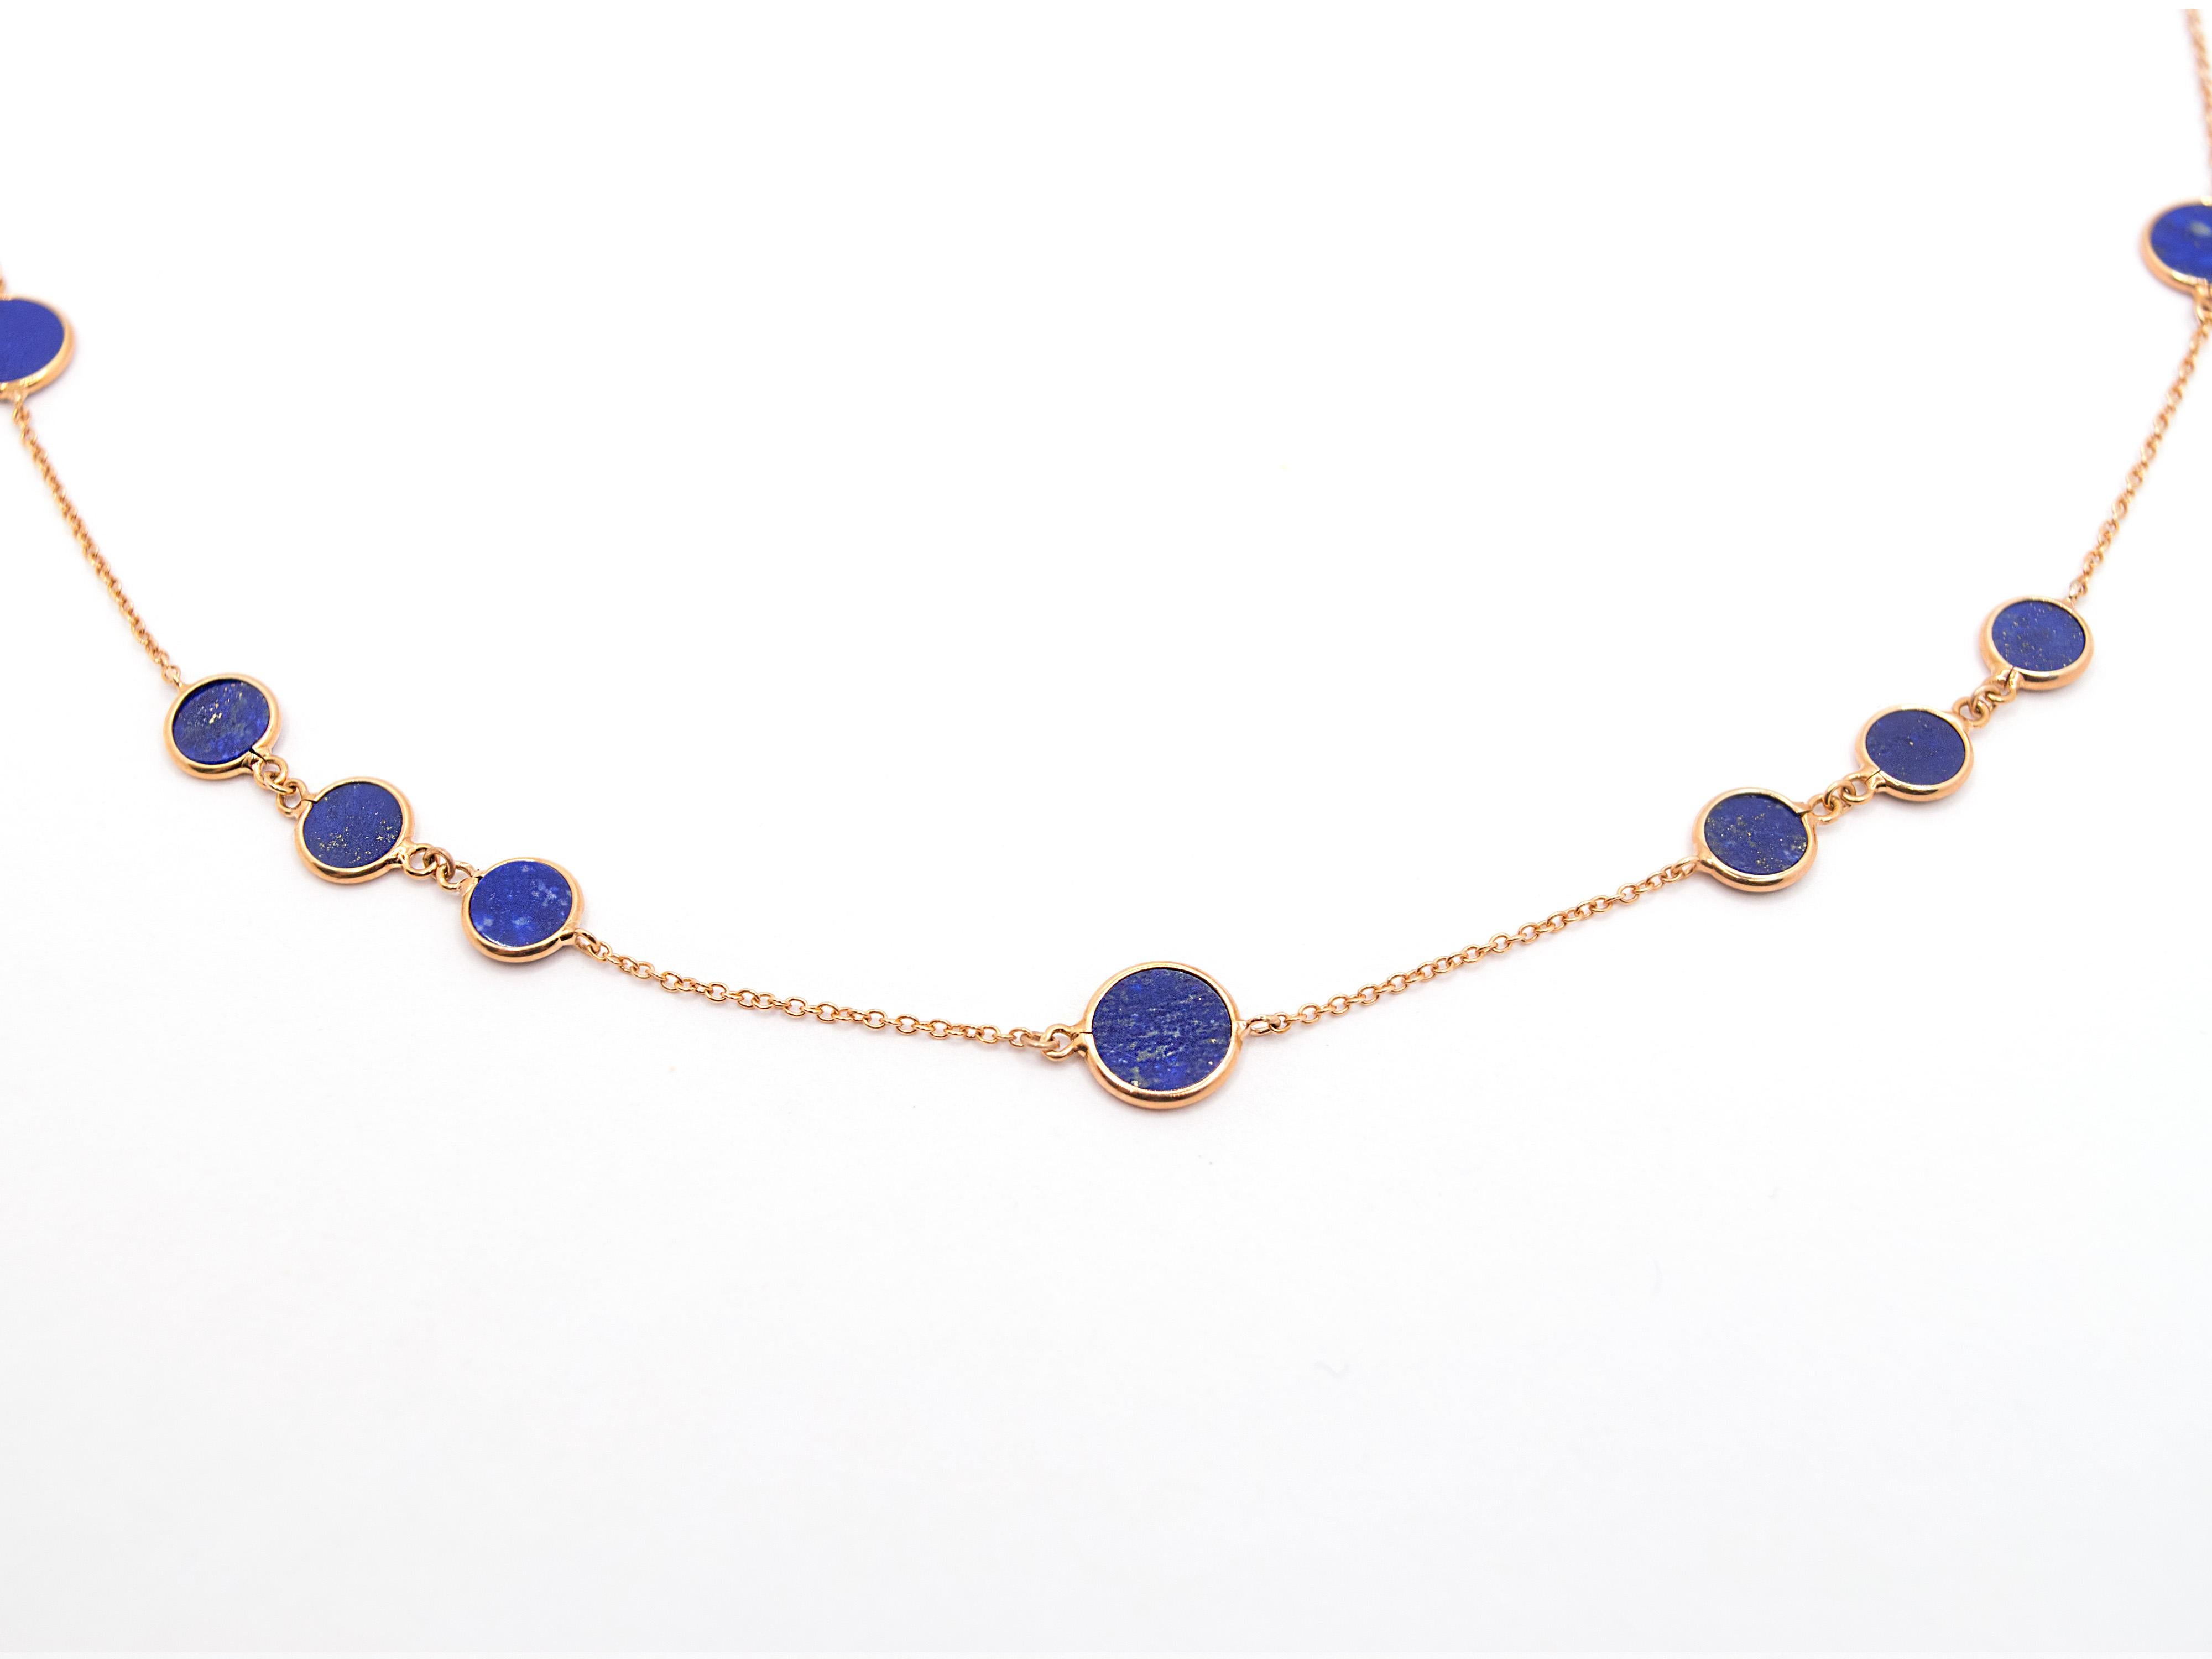 Eine wunderschöne Halskette aus 18 Kt Roségold und Lapislazuli.
Dieses Collier besteht aus einem runden Kettenglied, das mit runden Lapislazuli-Elementen im Plattenschliff durchsetzt ist, die eine wunderschöne tiefblaue Farbe haben, die mit den für